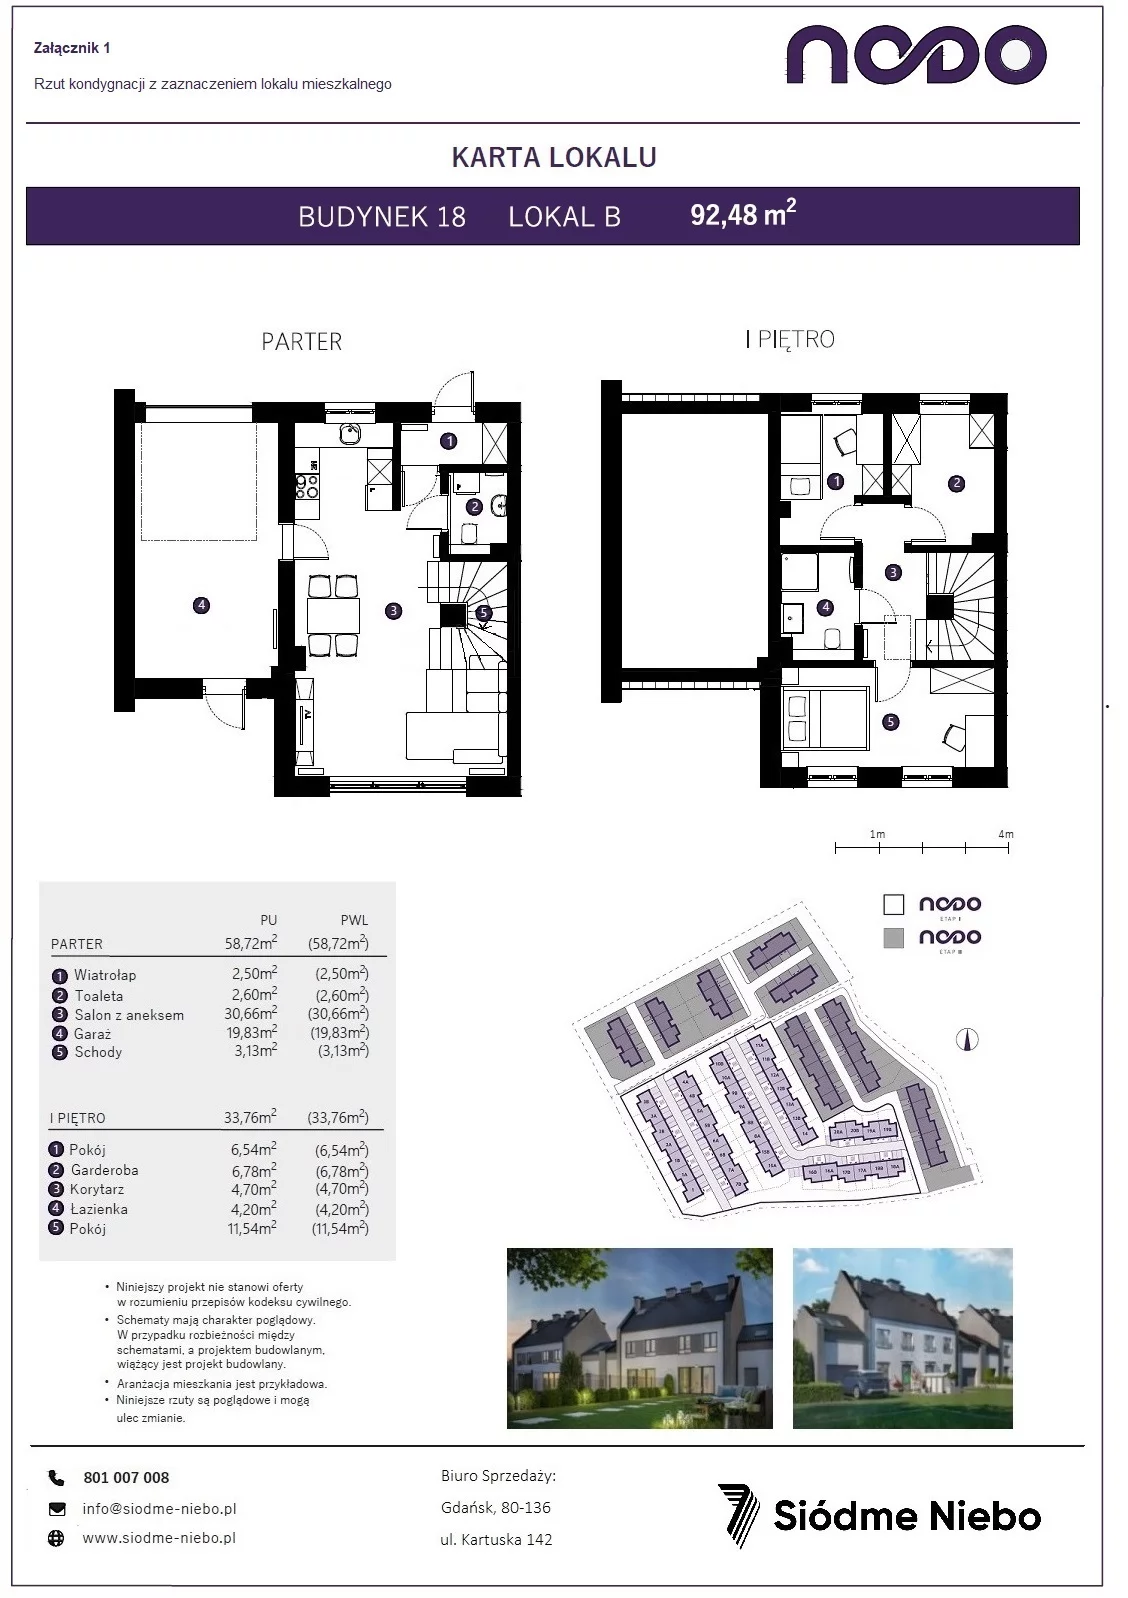 Mieszkanie 92,48 m², parter, oferta nr 18B, Osiedle Nodo, Gdańsk, Jasień, ul. Lubowidzka